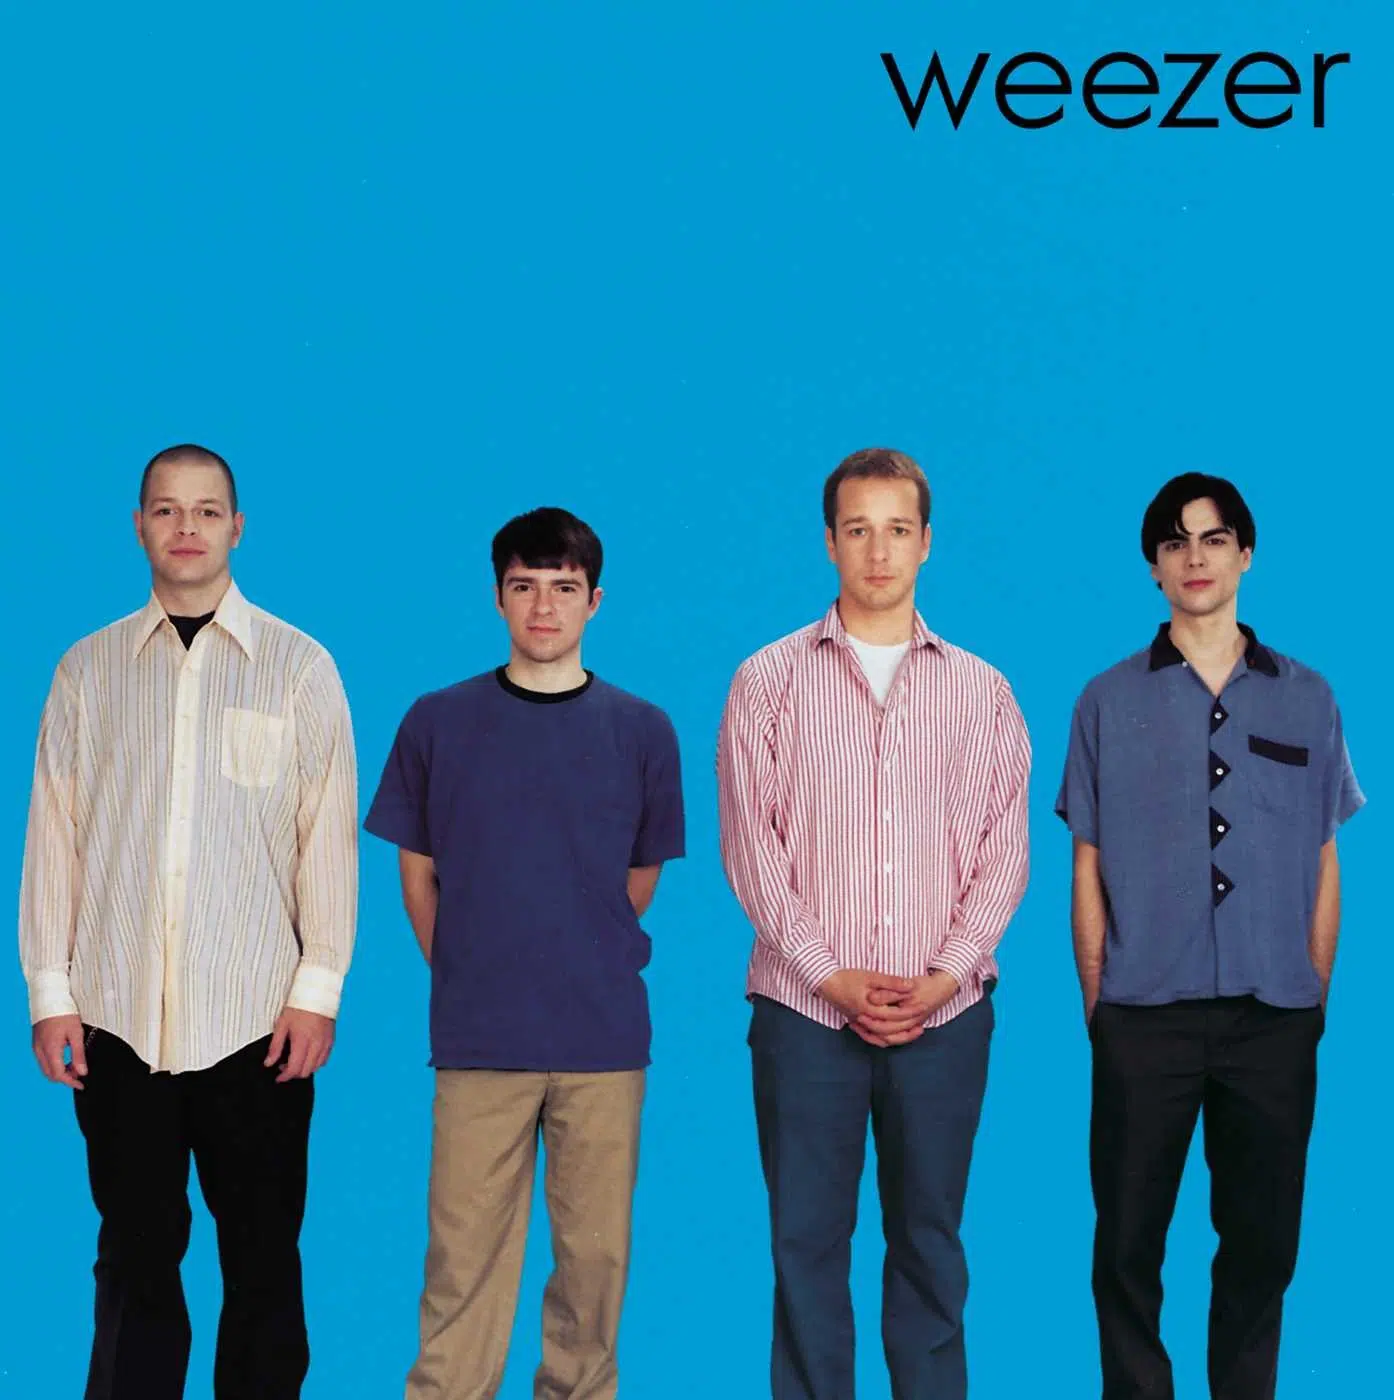 Weezer Weezer (Blue Album)